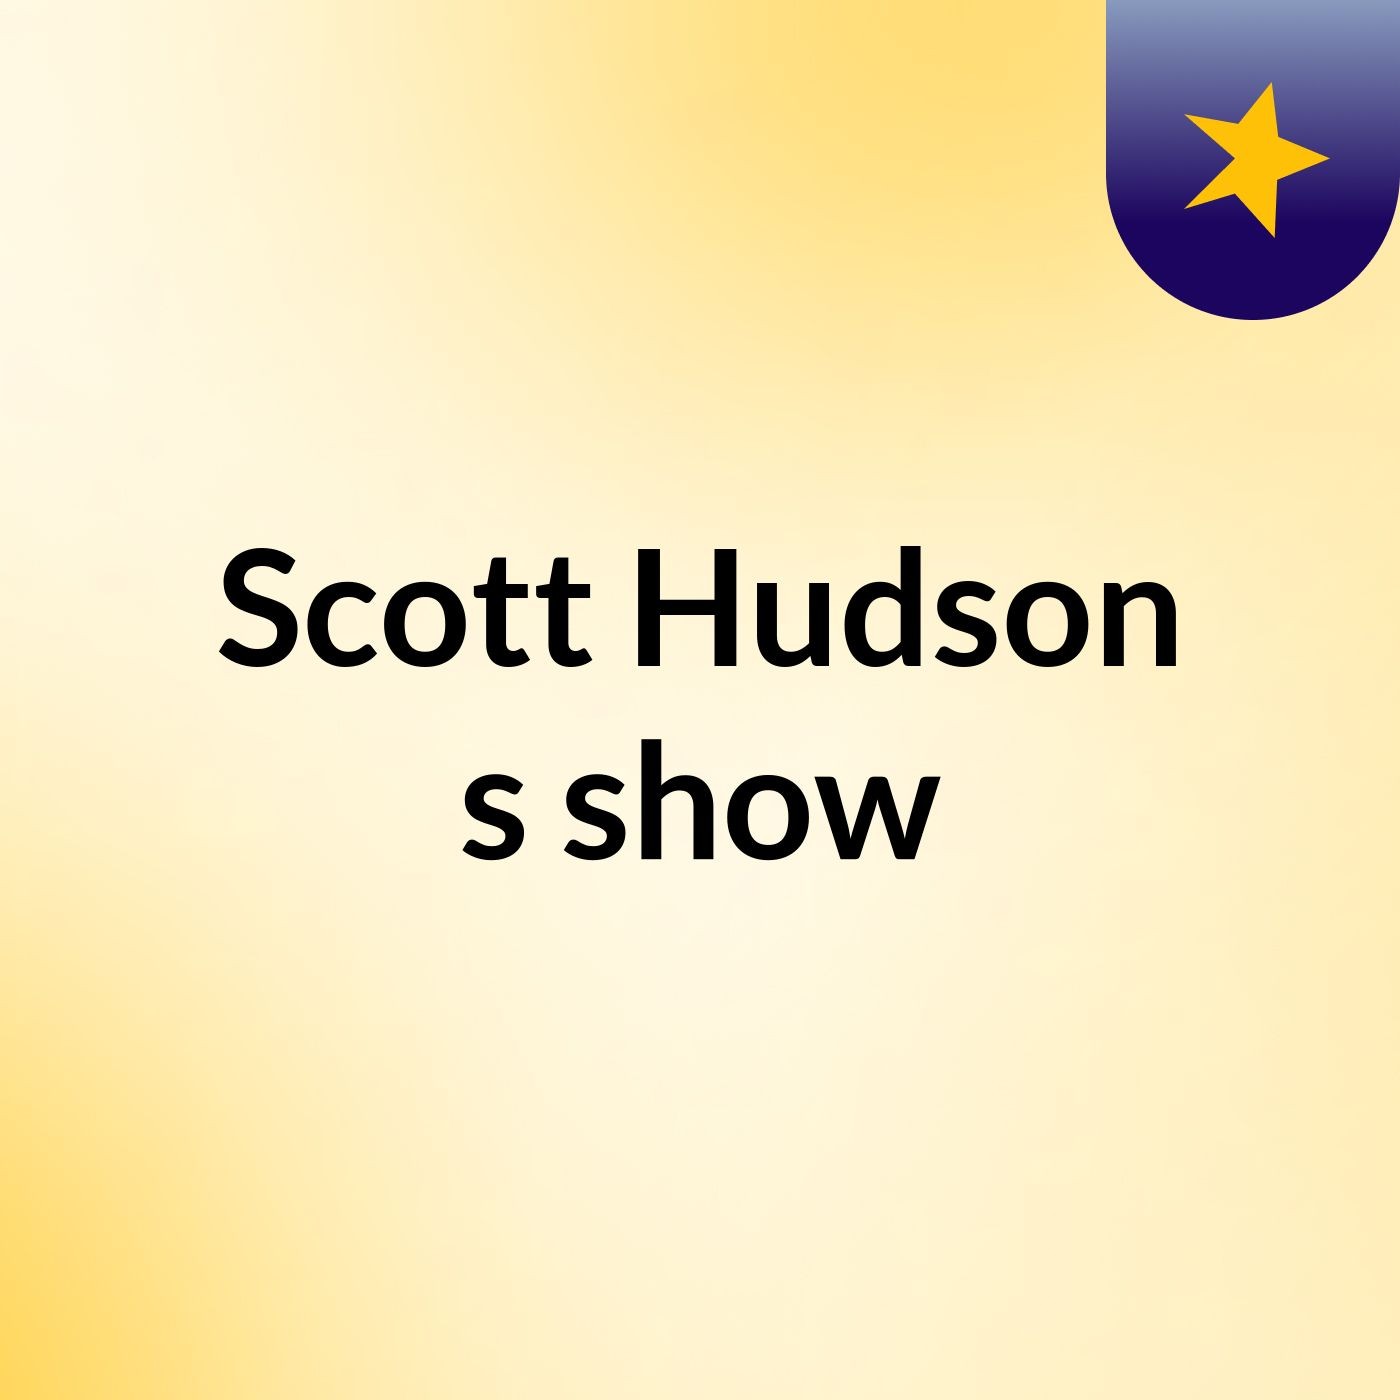 Scott Hudson's show